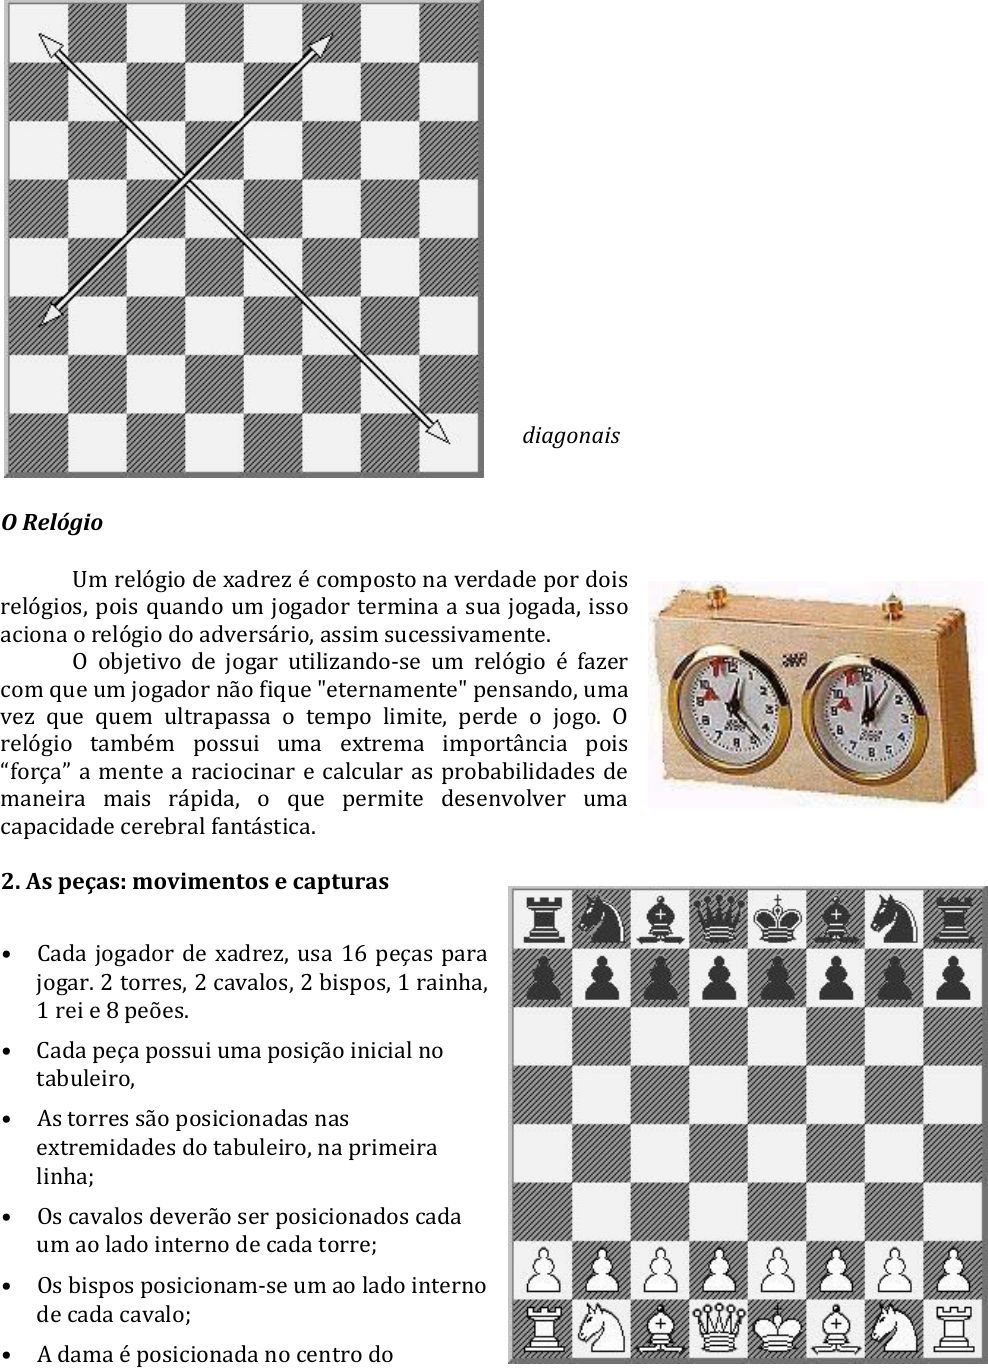 Apostila-1-Xadrez - Educação Física